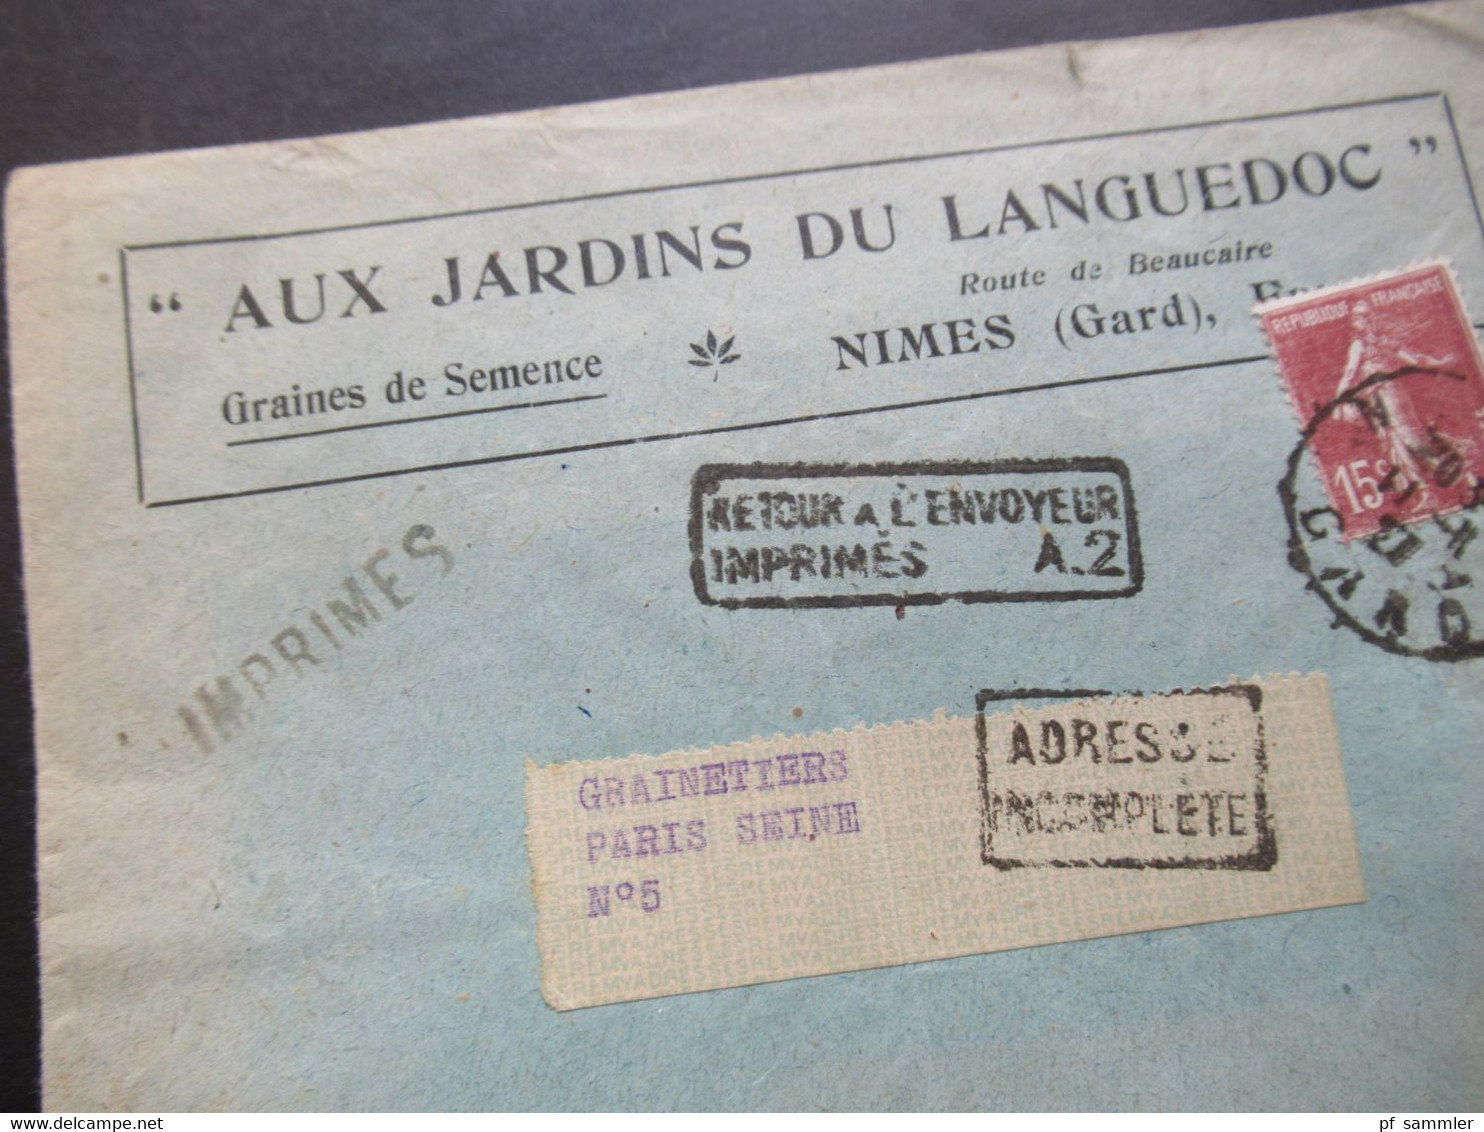 Frankreich 1927 Säerin Aux Jardins Du Languedoc Stempel Ra2 Retour A L'Envoyeur Imprimes A.2 Und Adresse Incomplete - 1906-38 Säerin, Untergrund Glatt